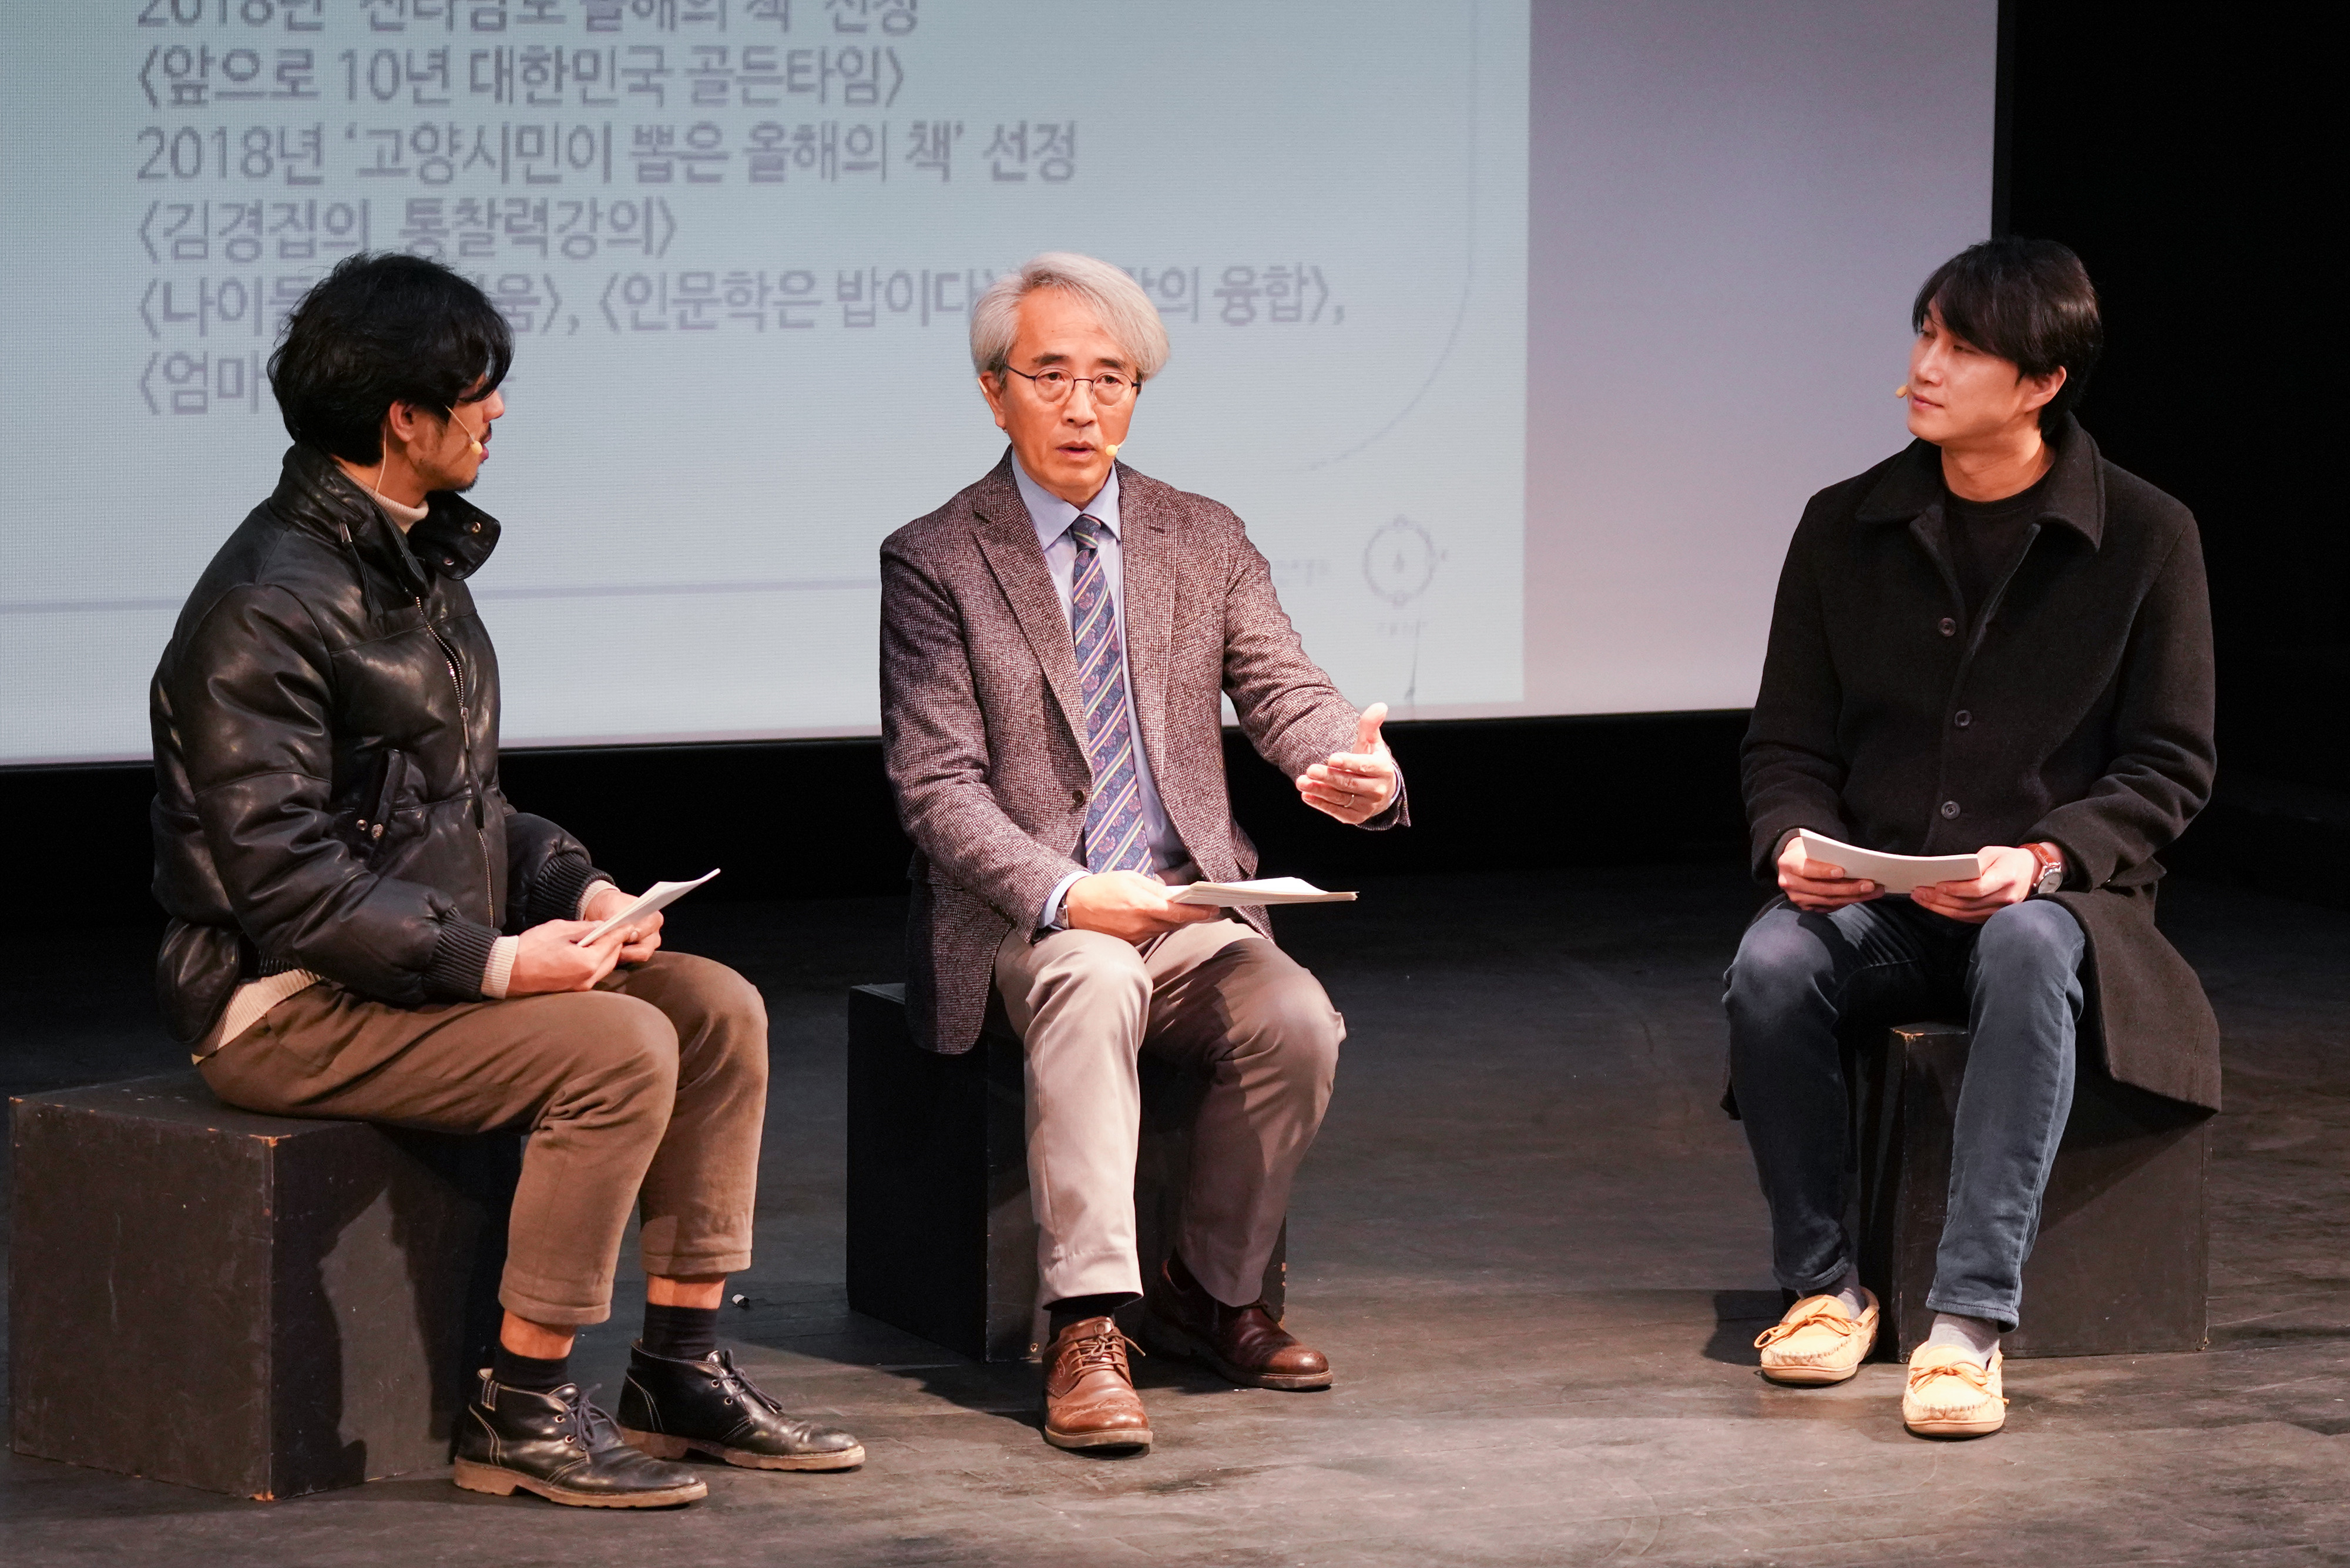 질의응답을 하는 배우들과 철학자 김경집